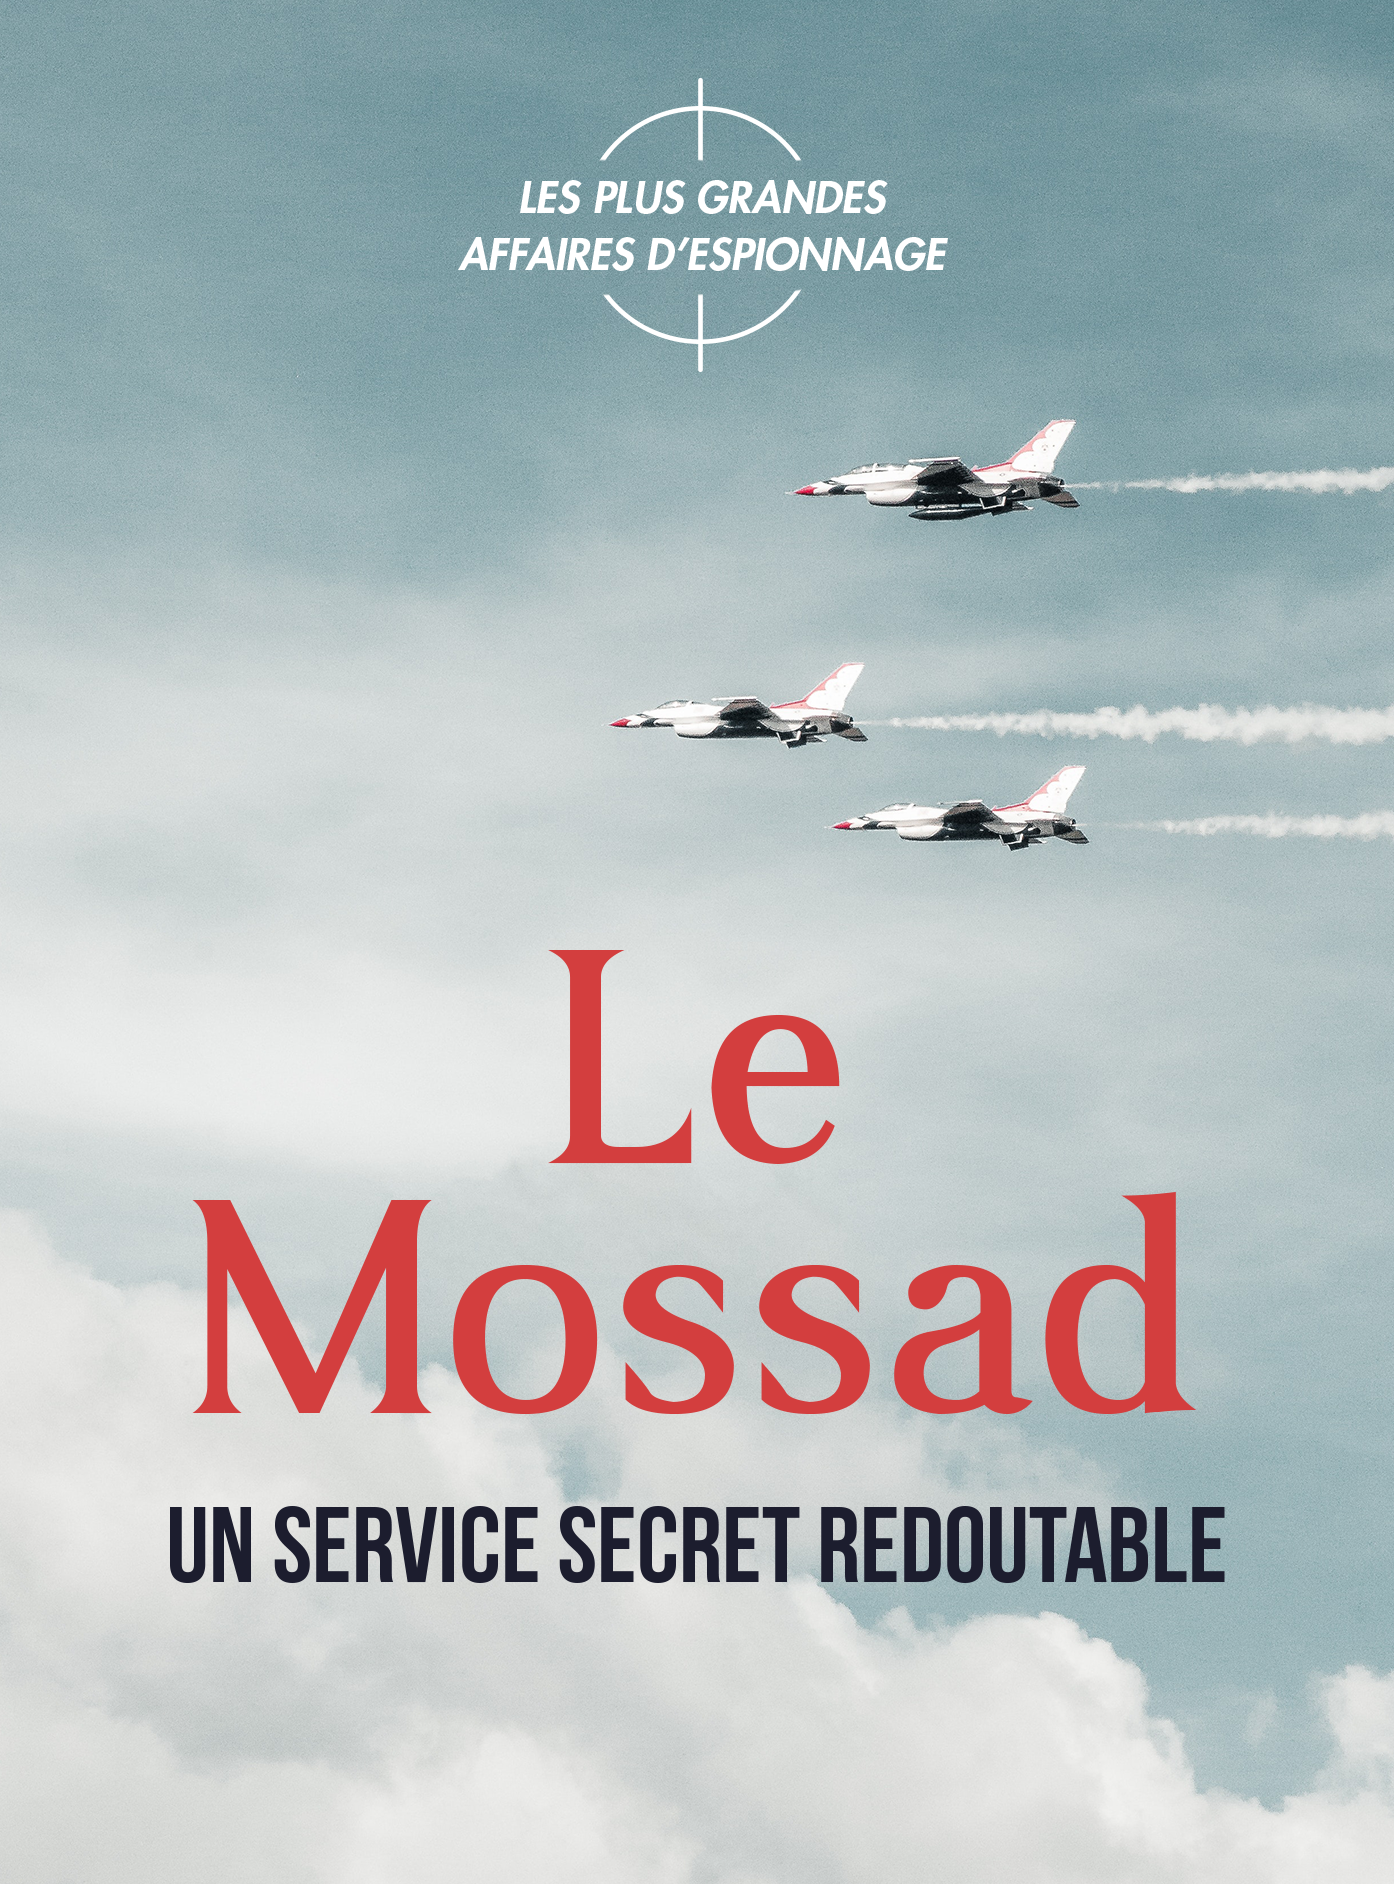 Le Mossad